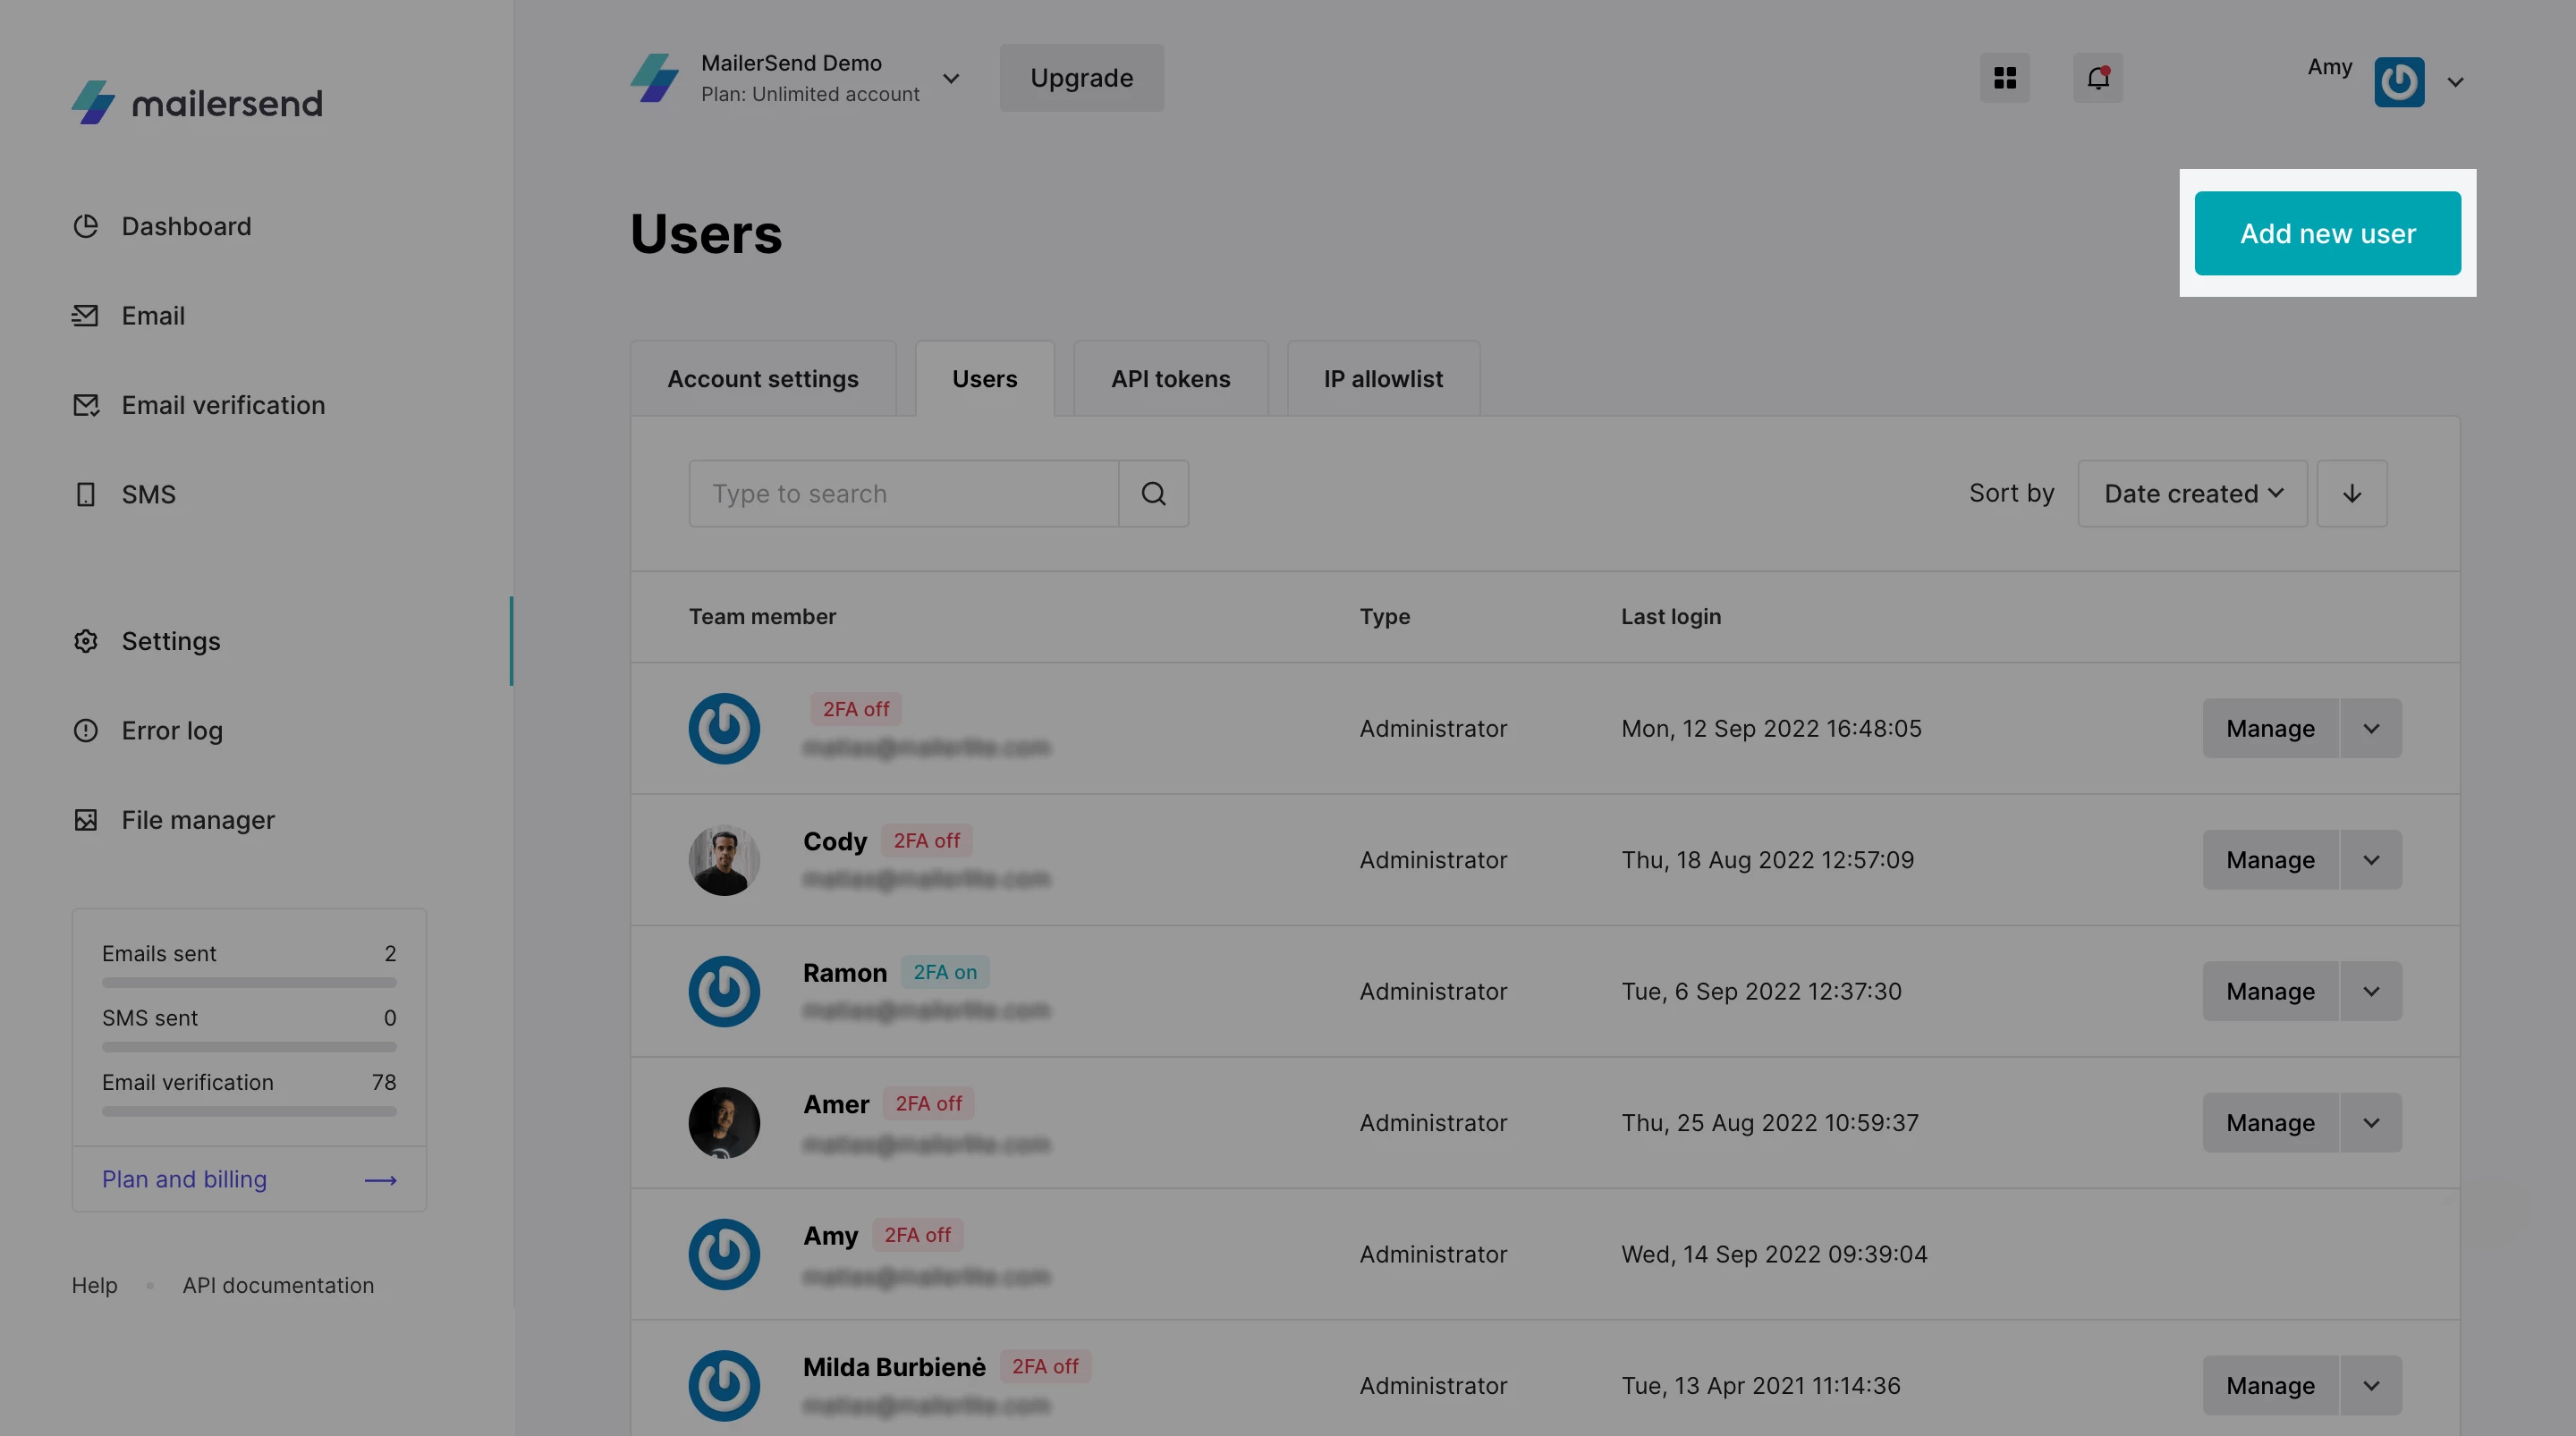 Screenshot highlighting the Add new user button.